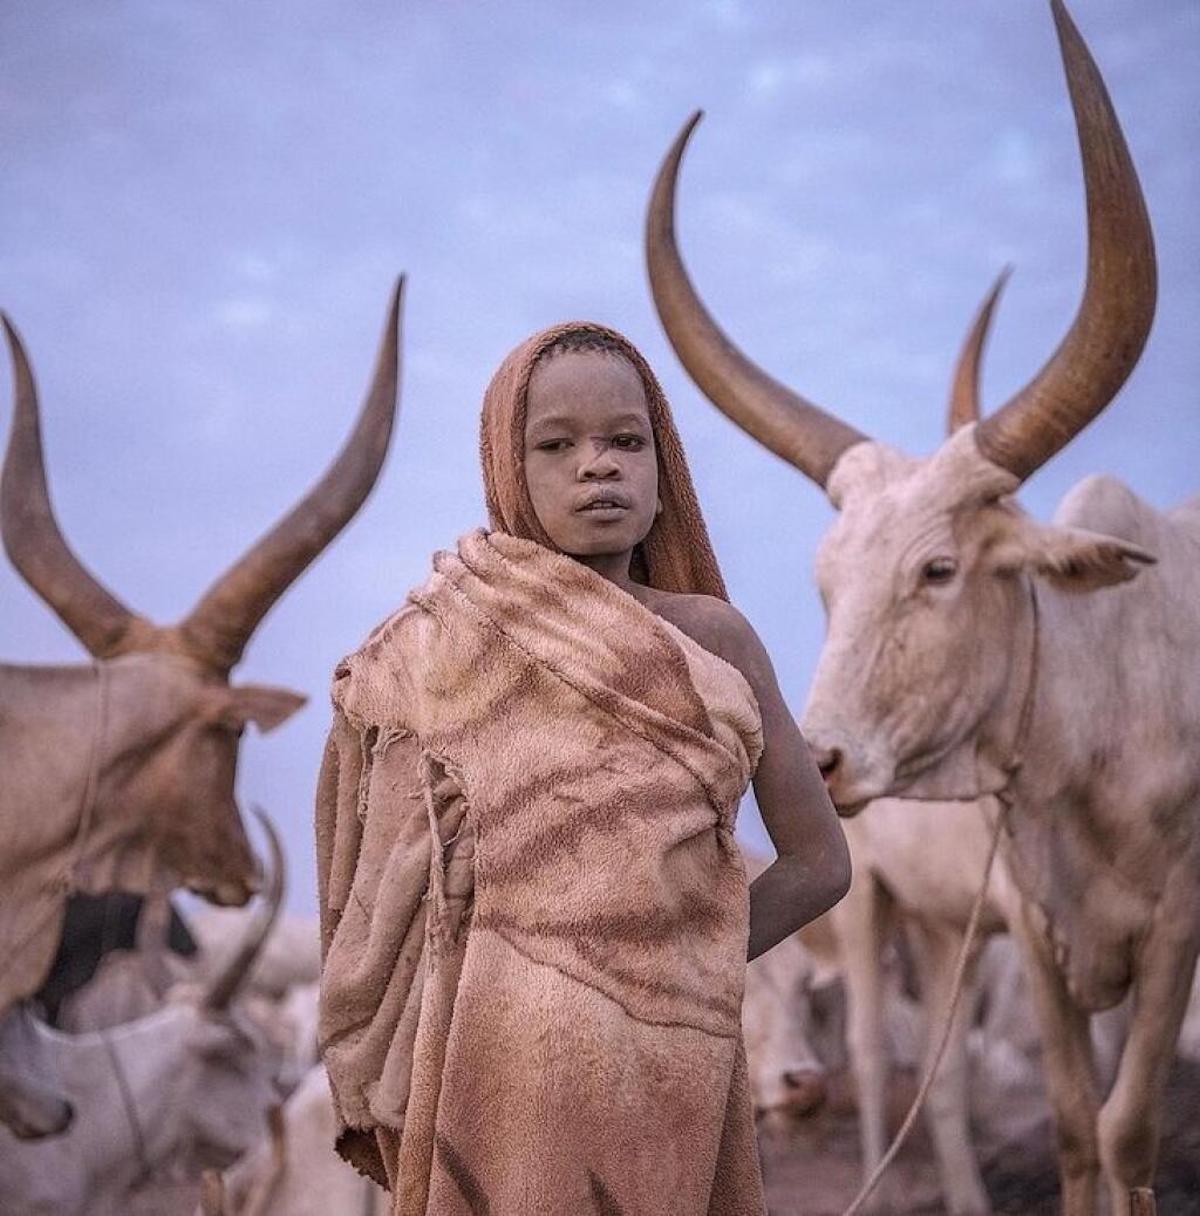 Fotos de la niñez alrededor del mundo por Massimo Bietti